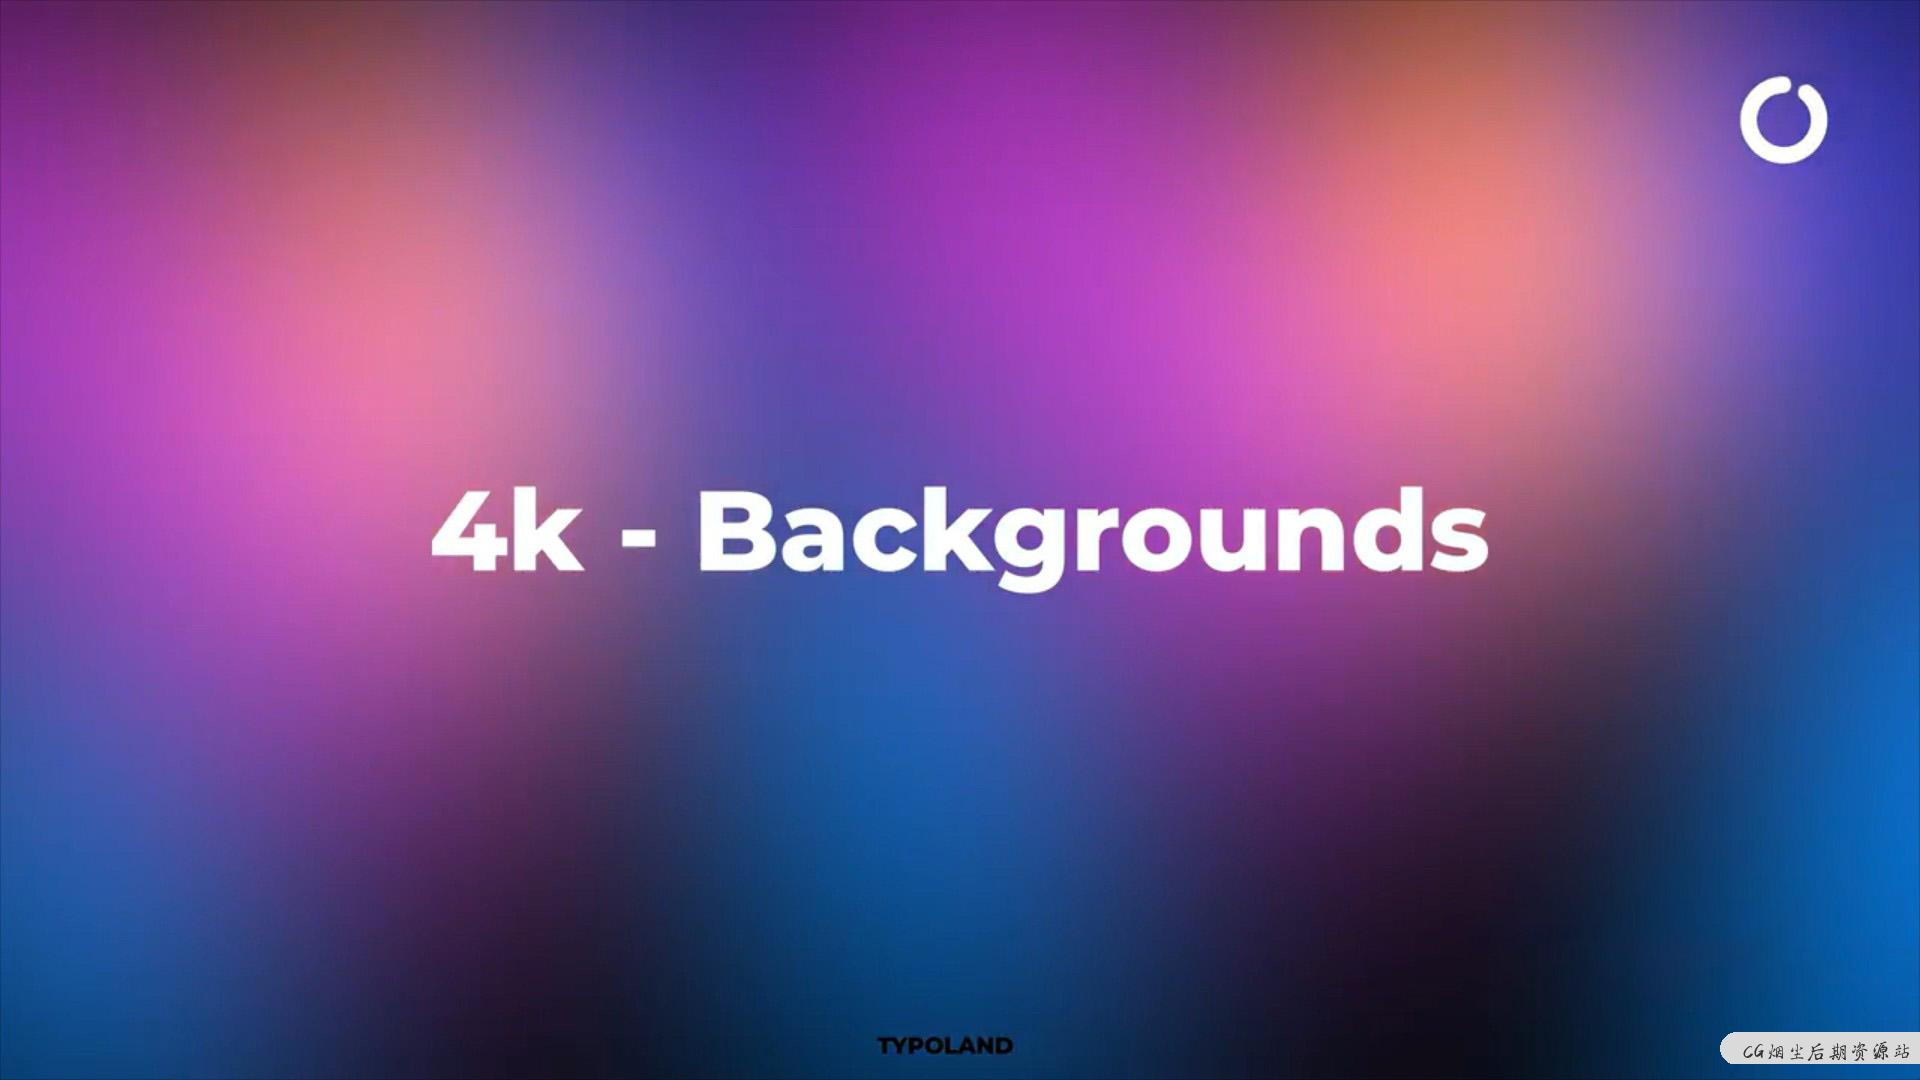 fcpx插件 4K绚丽动态背景制作工具 可自定义颜色 4k backgrounds